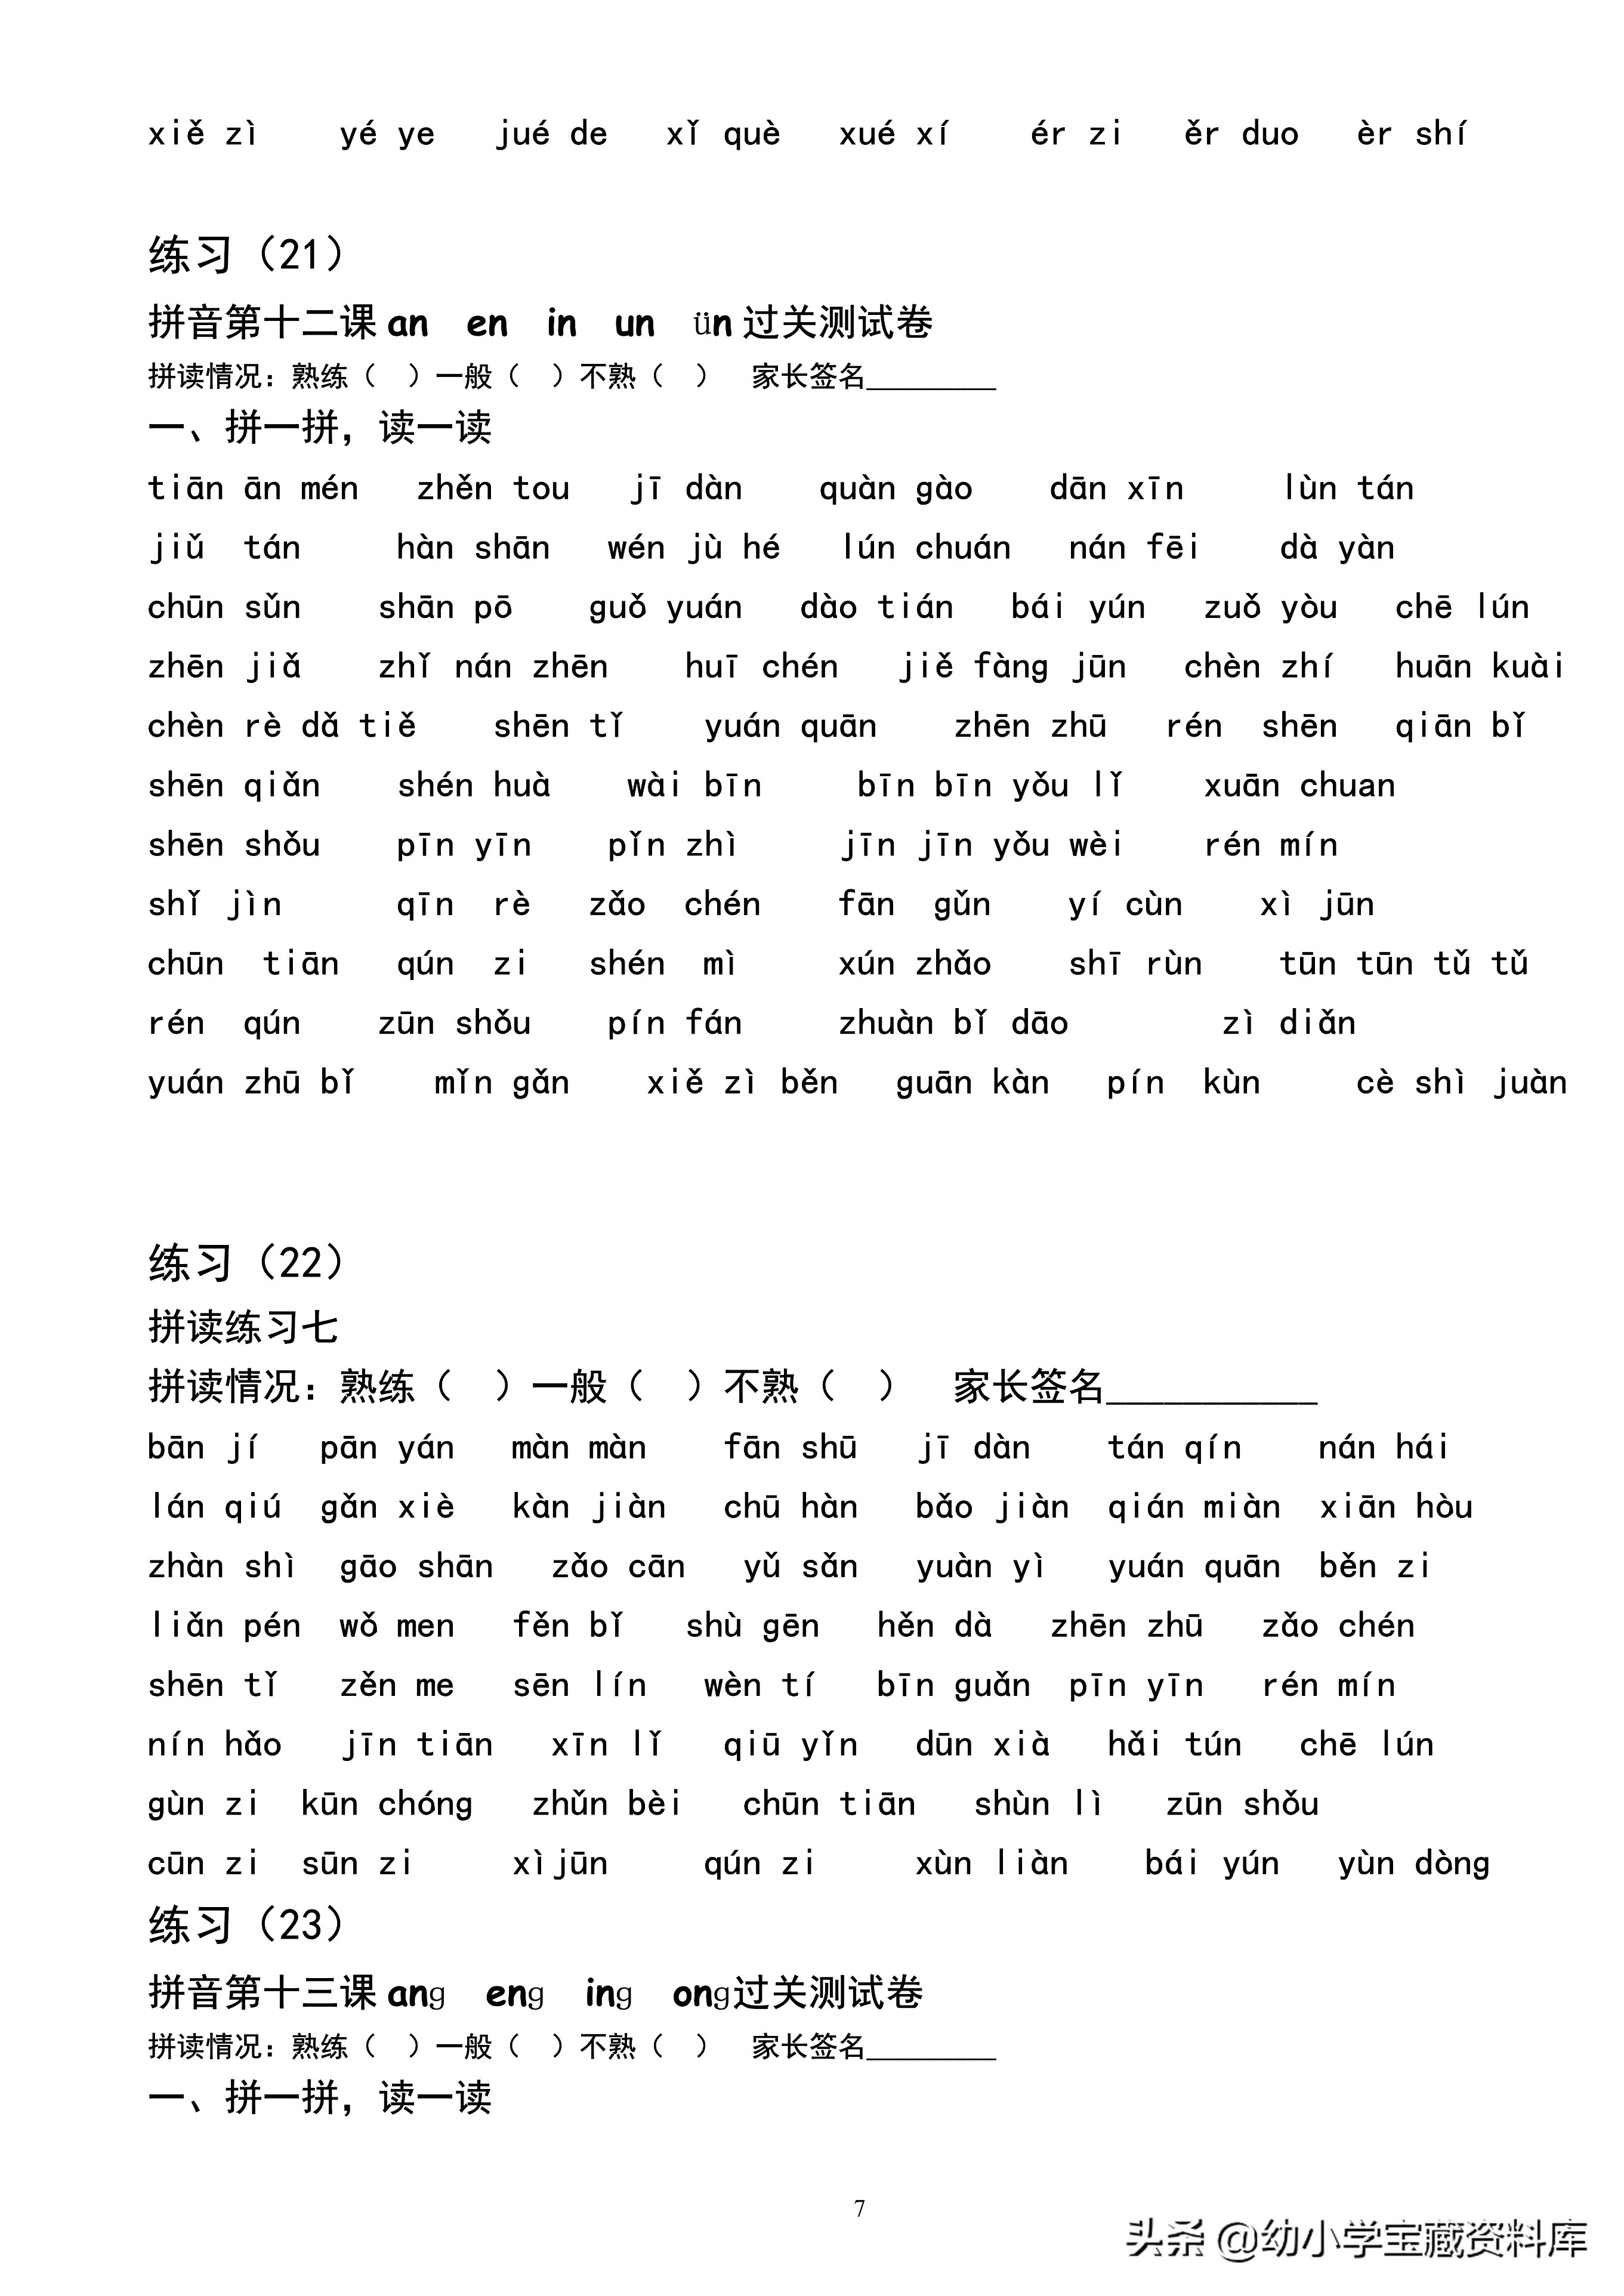 「一年级」汉语拼音拼读练习24套